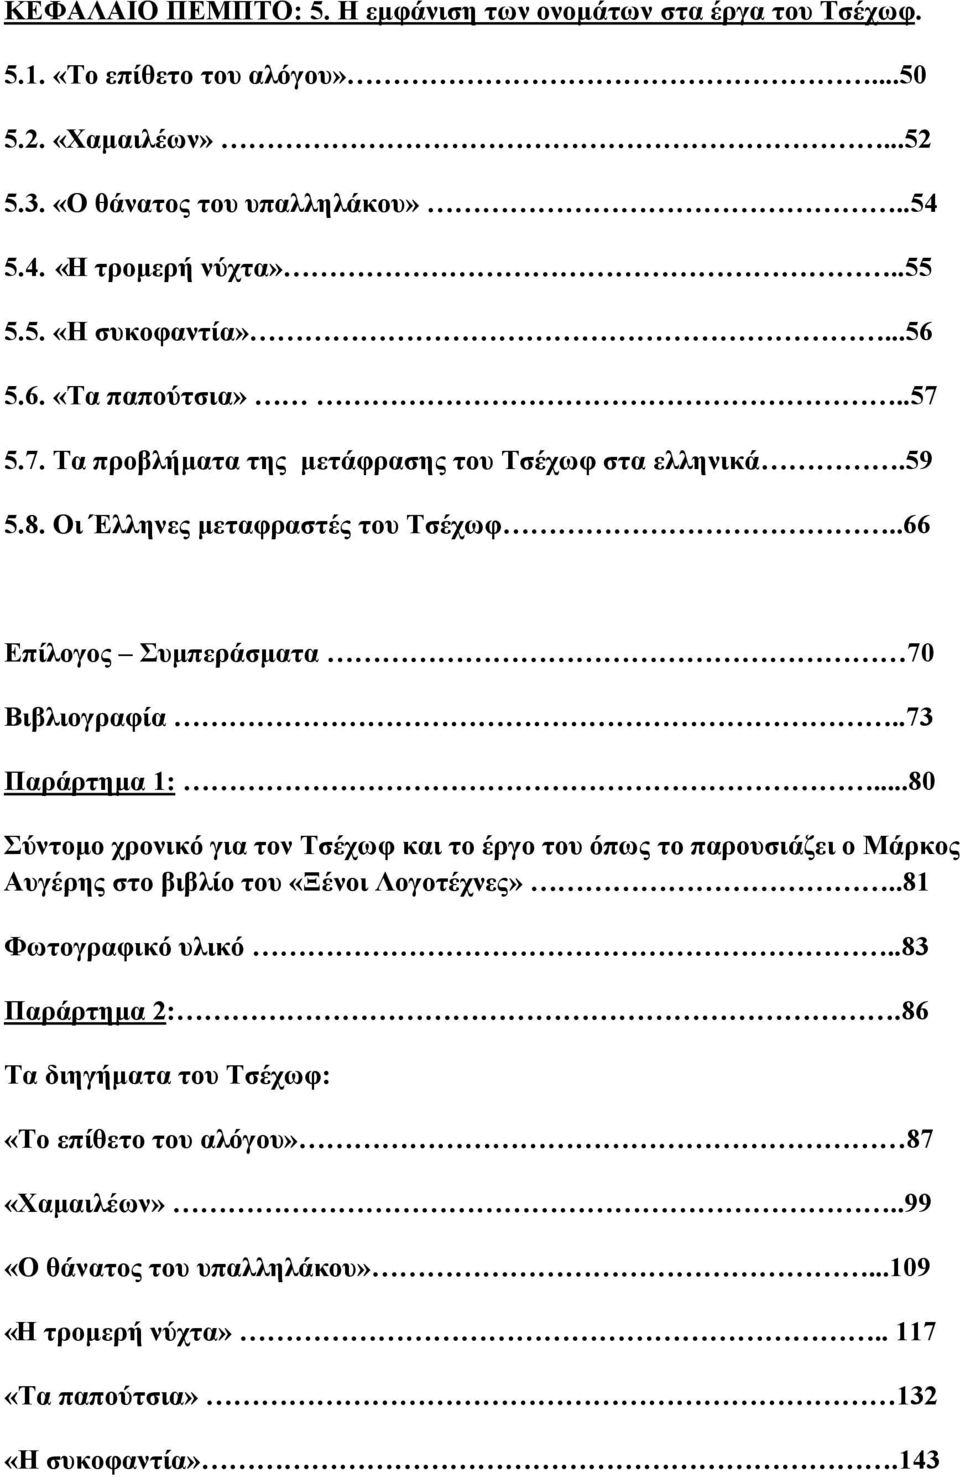 .66 Επίλογος Συμπεράσματα 70 Βιβλιογραφία..73 Παράρτημα 1:...80 Σύντομο χρονικό για τον Τσέχωφ και το έργο του όπως το παρουσιάζει ο Μάρκος Αυγέρης στο βιβλίο του «Ξένοι Λογοτέχνες».